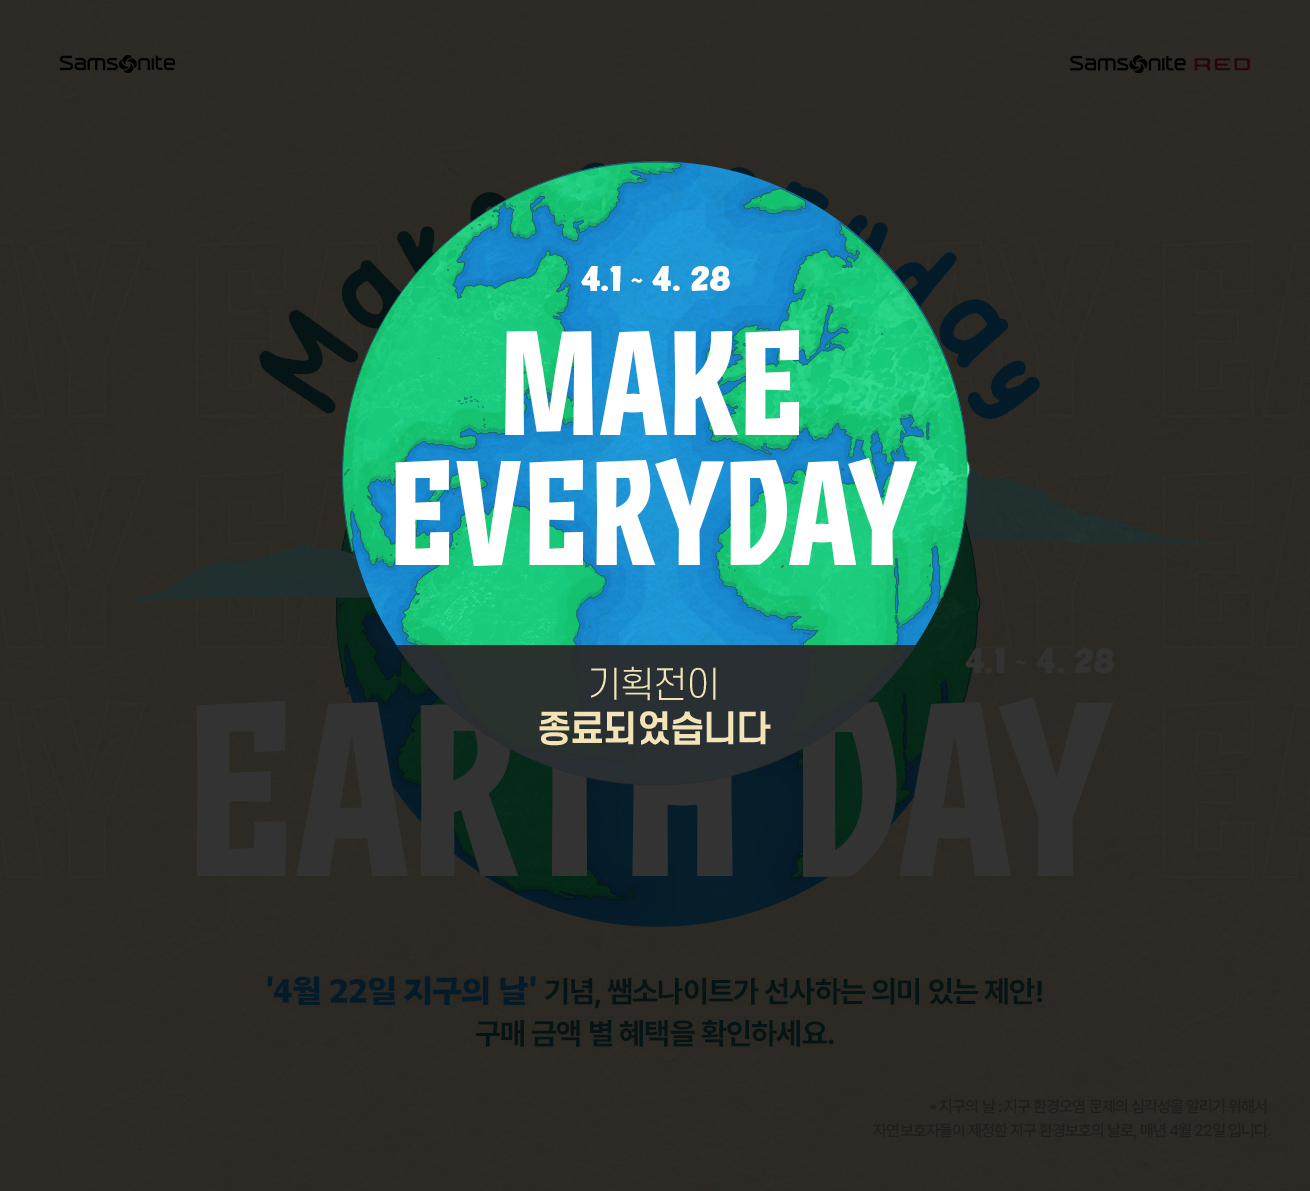 Make everyday EARTH DAY '4월 22일 지구의 날' 기념, 쌤소나이트가 선사하는 의미 있는 제안! 기획전이 종료되었습니다.